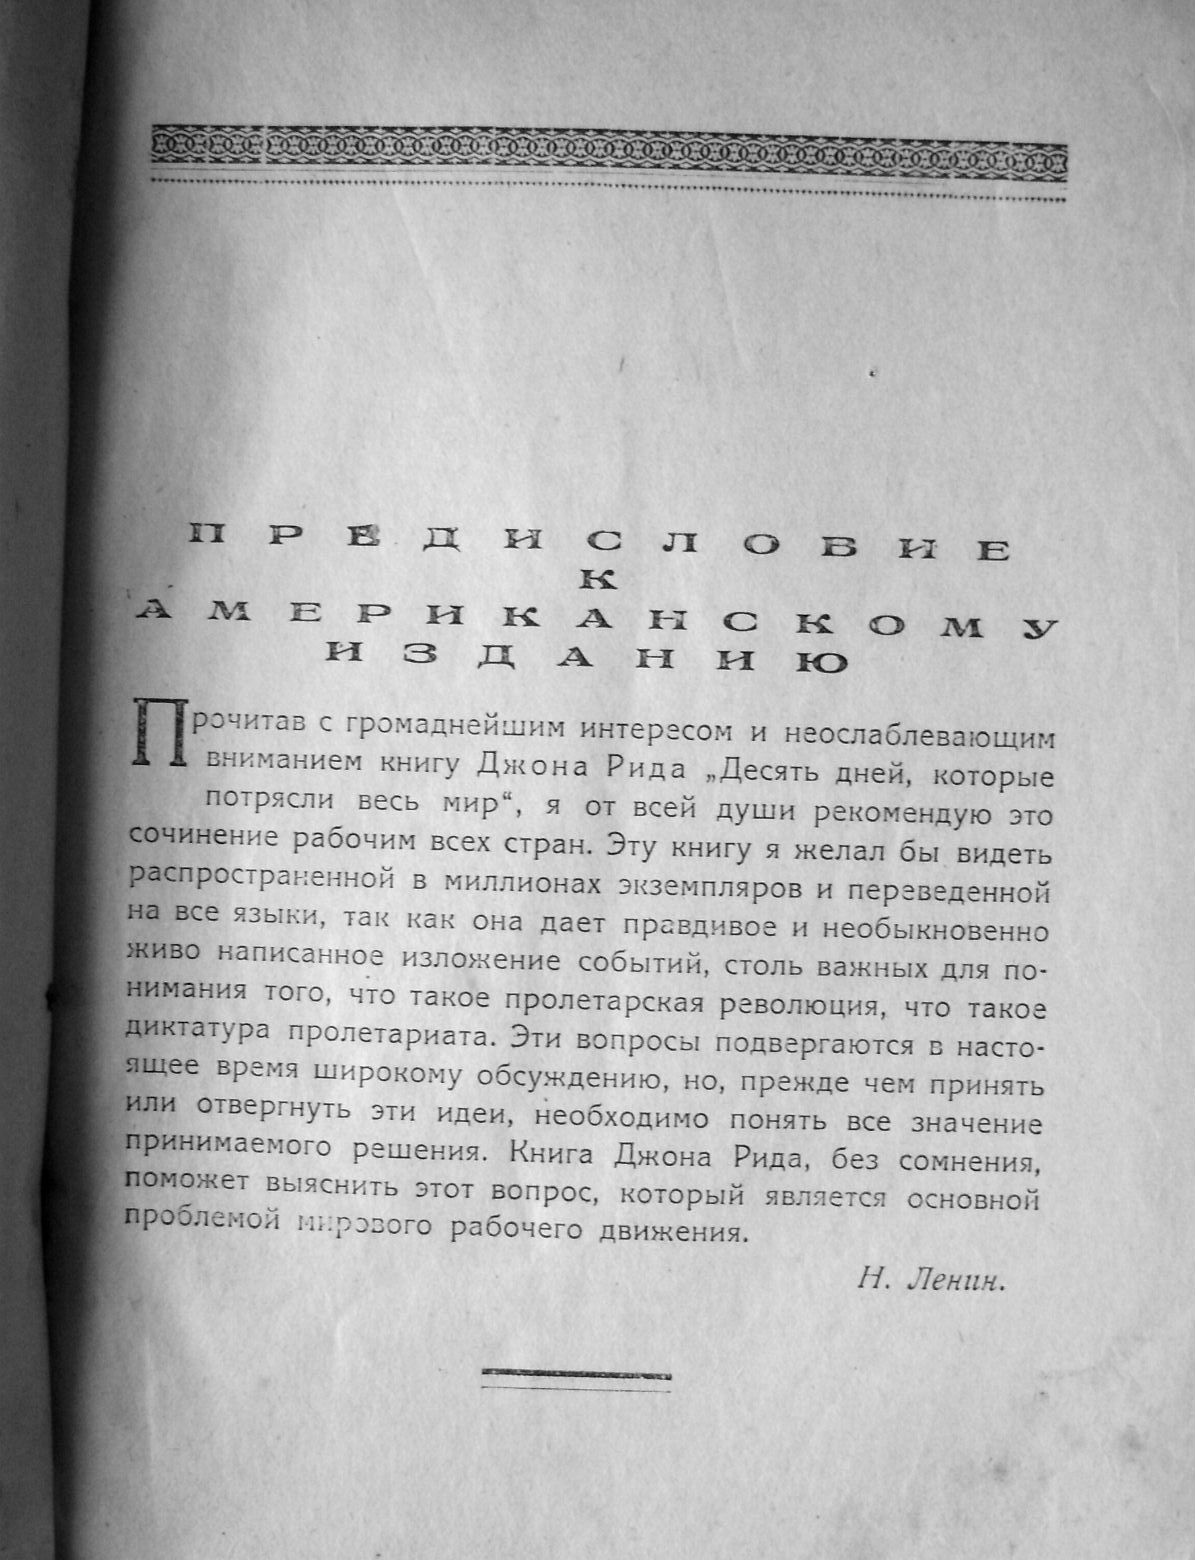 Редкое  издание  Джона Рида «Десять дней  в городе Москва, фото 2, телефон продавца: +7 (927) 561-16-12